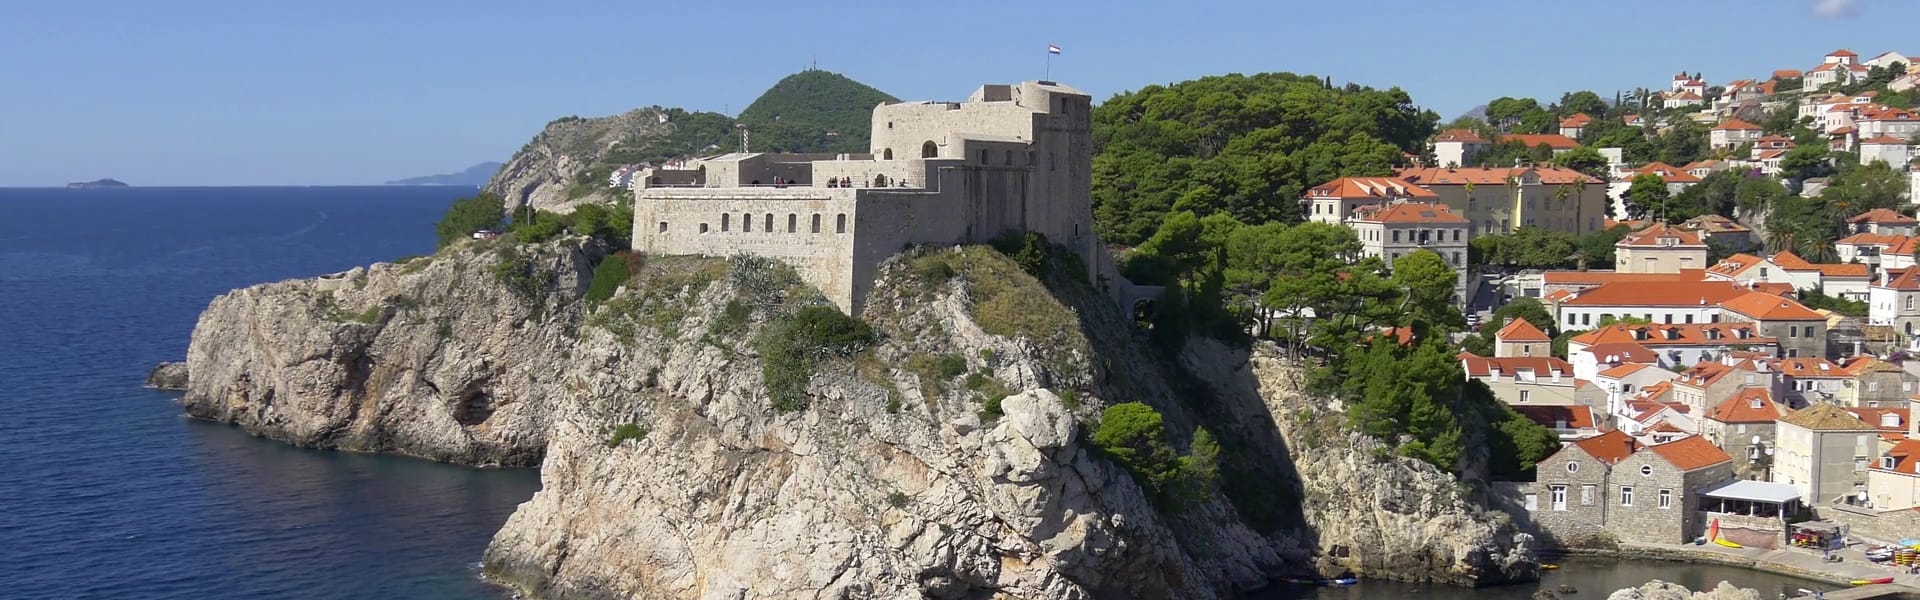 Dubrovnik Fort Lovrijenac